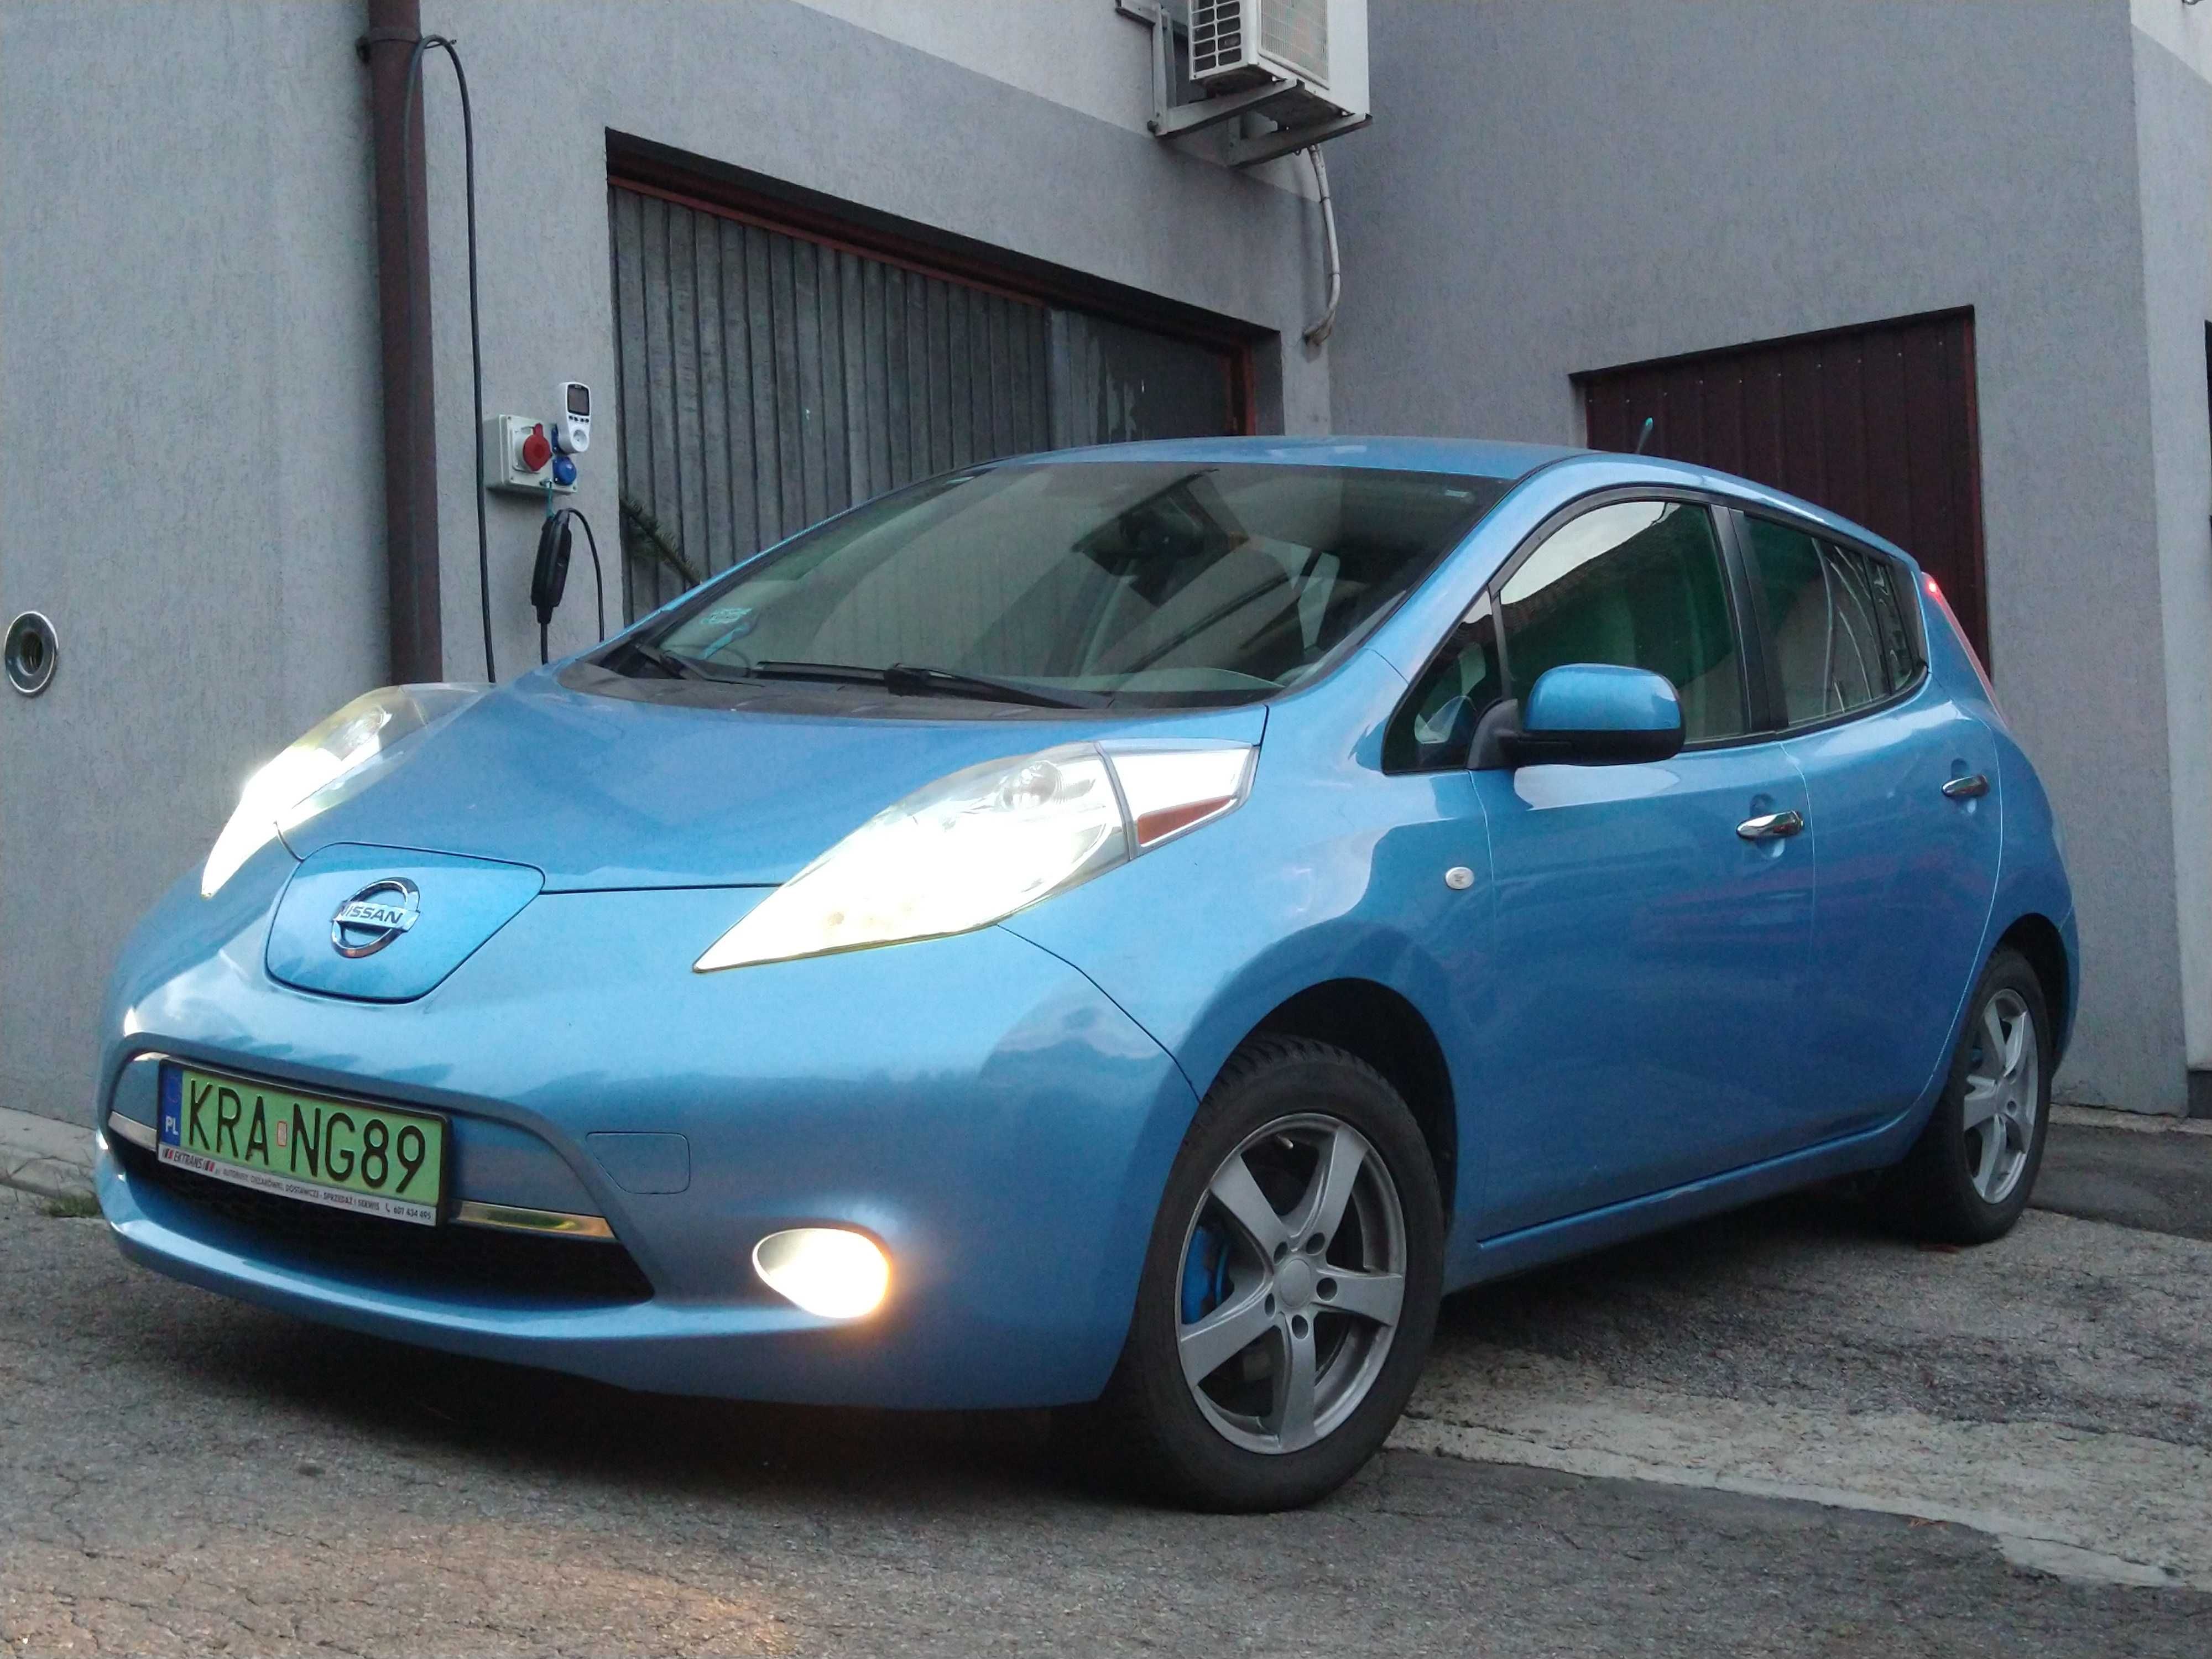 Nissan Leaf, elektryk, codziennie użytkowany, przeczytaj treść